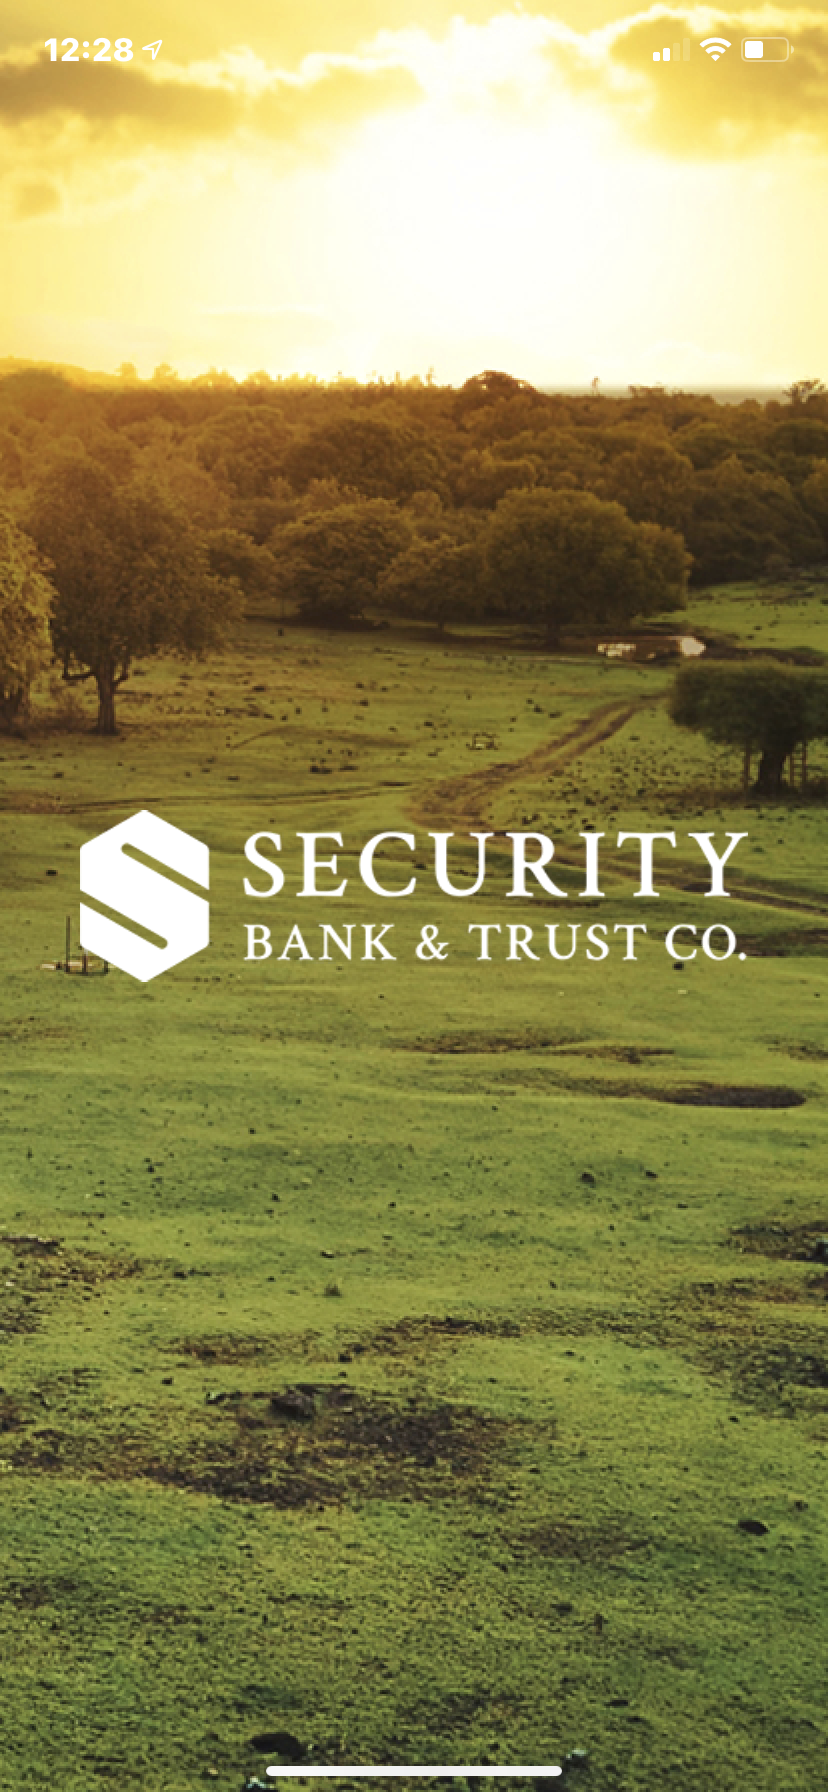 Security Bank & Trust Co App Screen